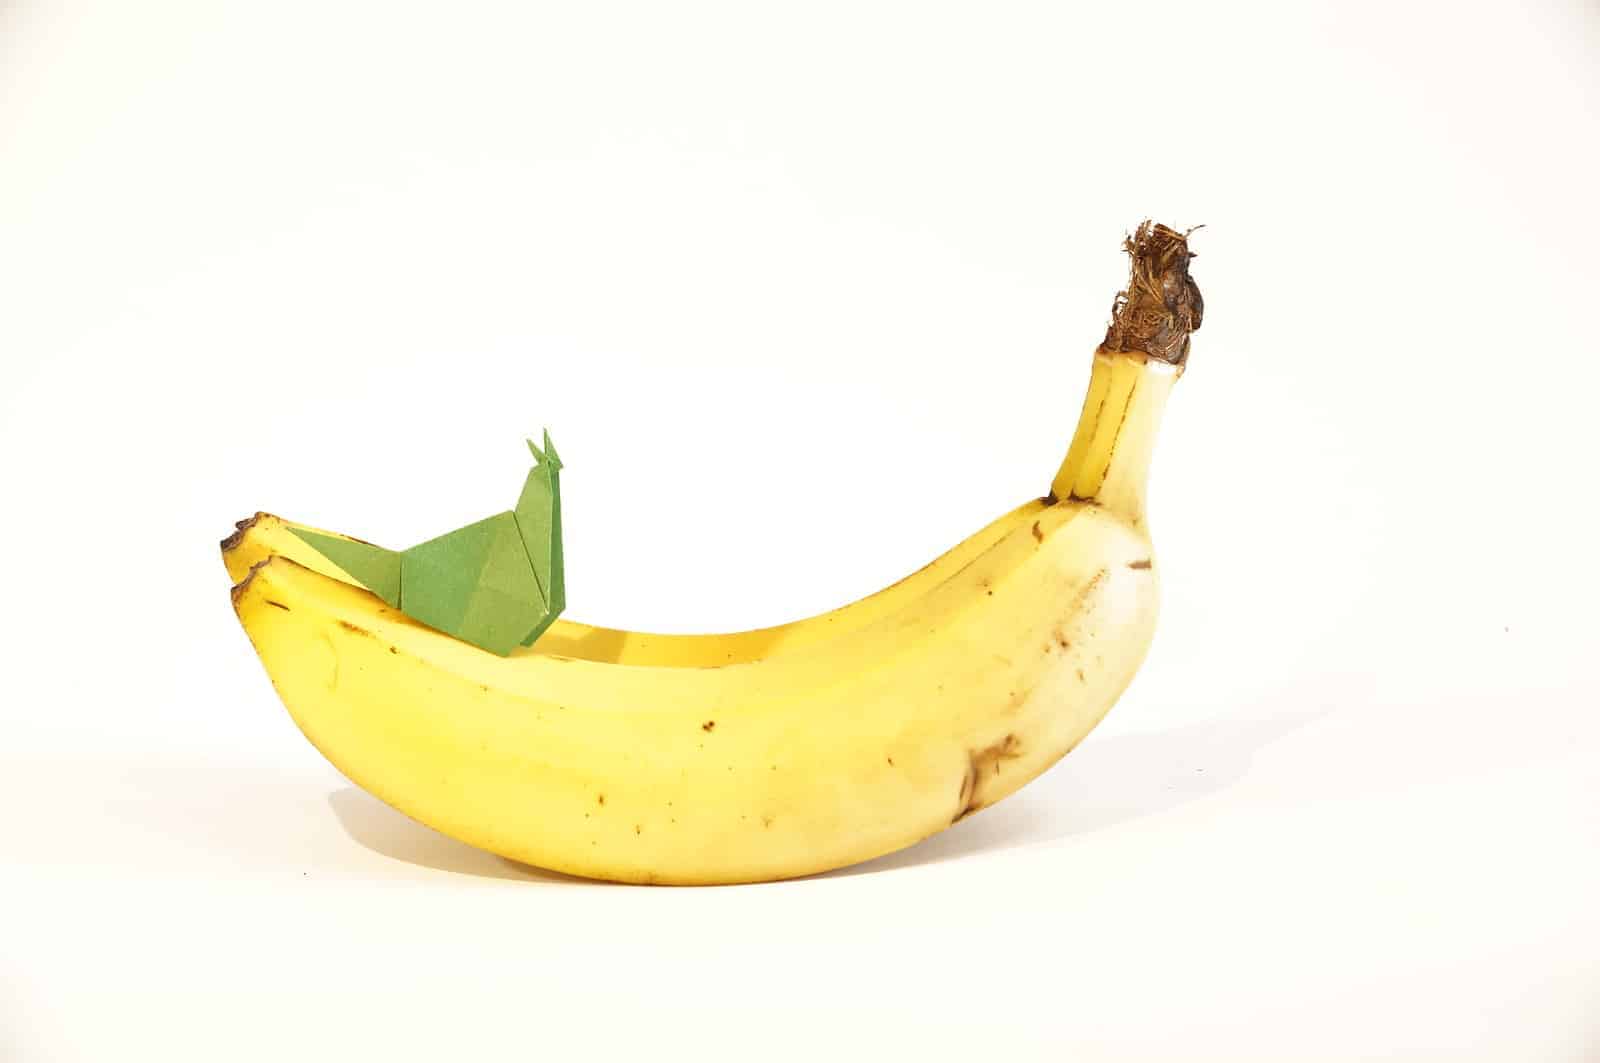 banana and paper slug as a representation of sqlite